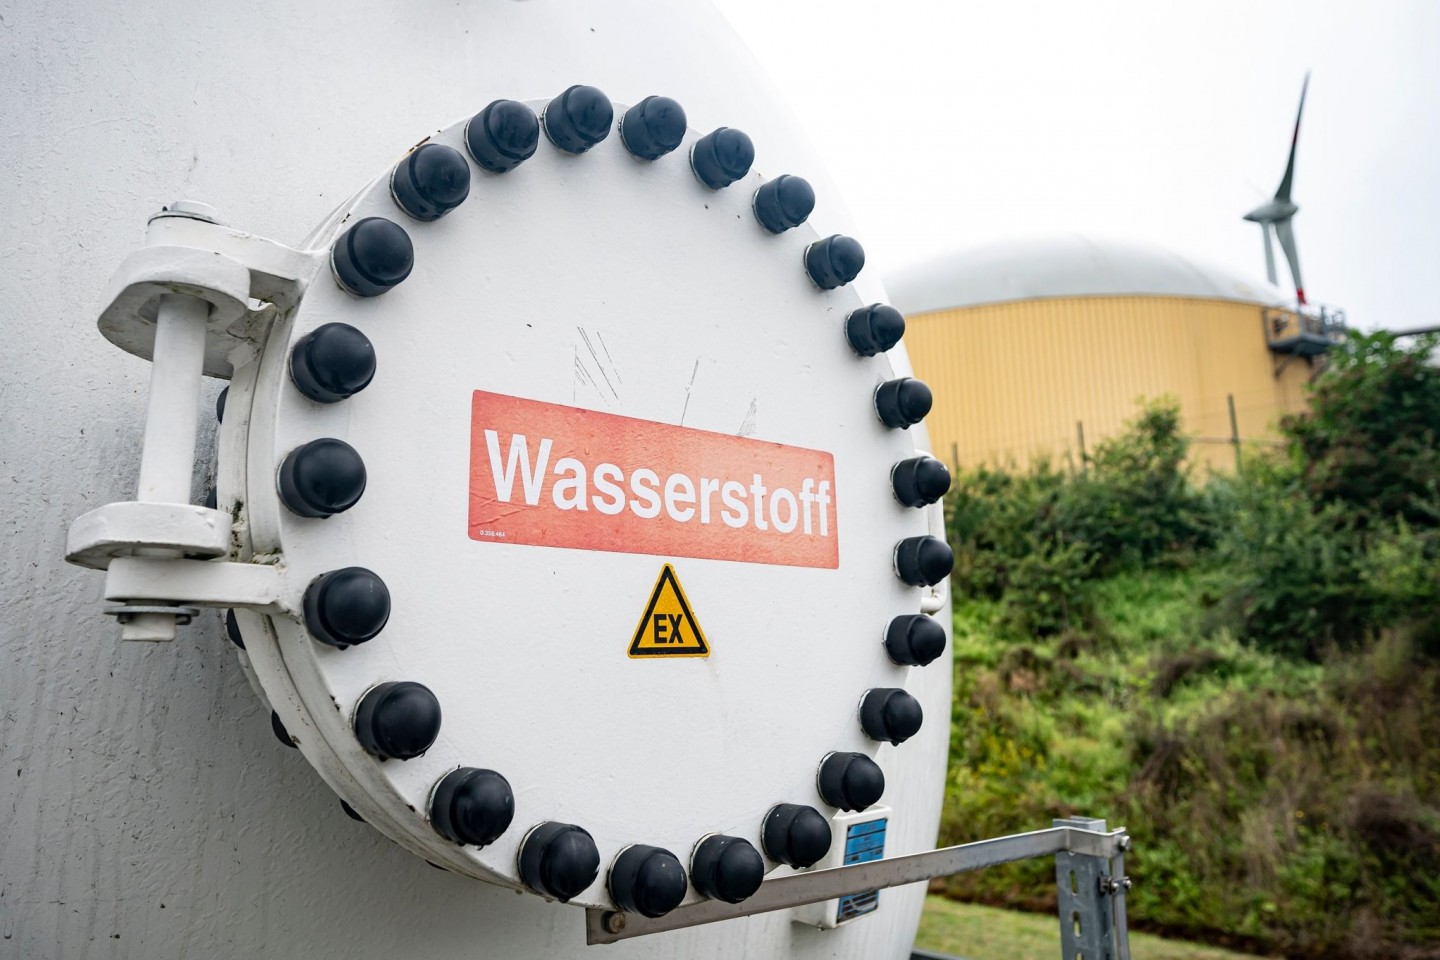 Wasserstoffproduktion soll in Zukunft wettbewerbsfähig in Deutschland stattfinden.